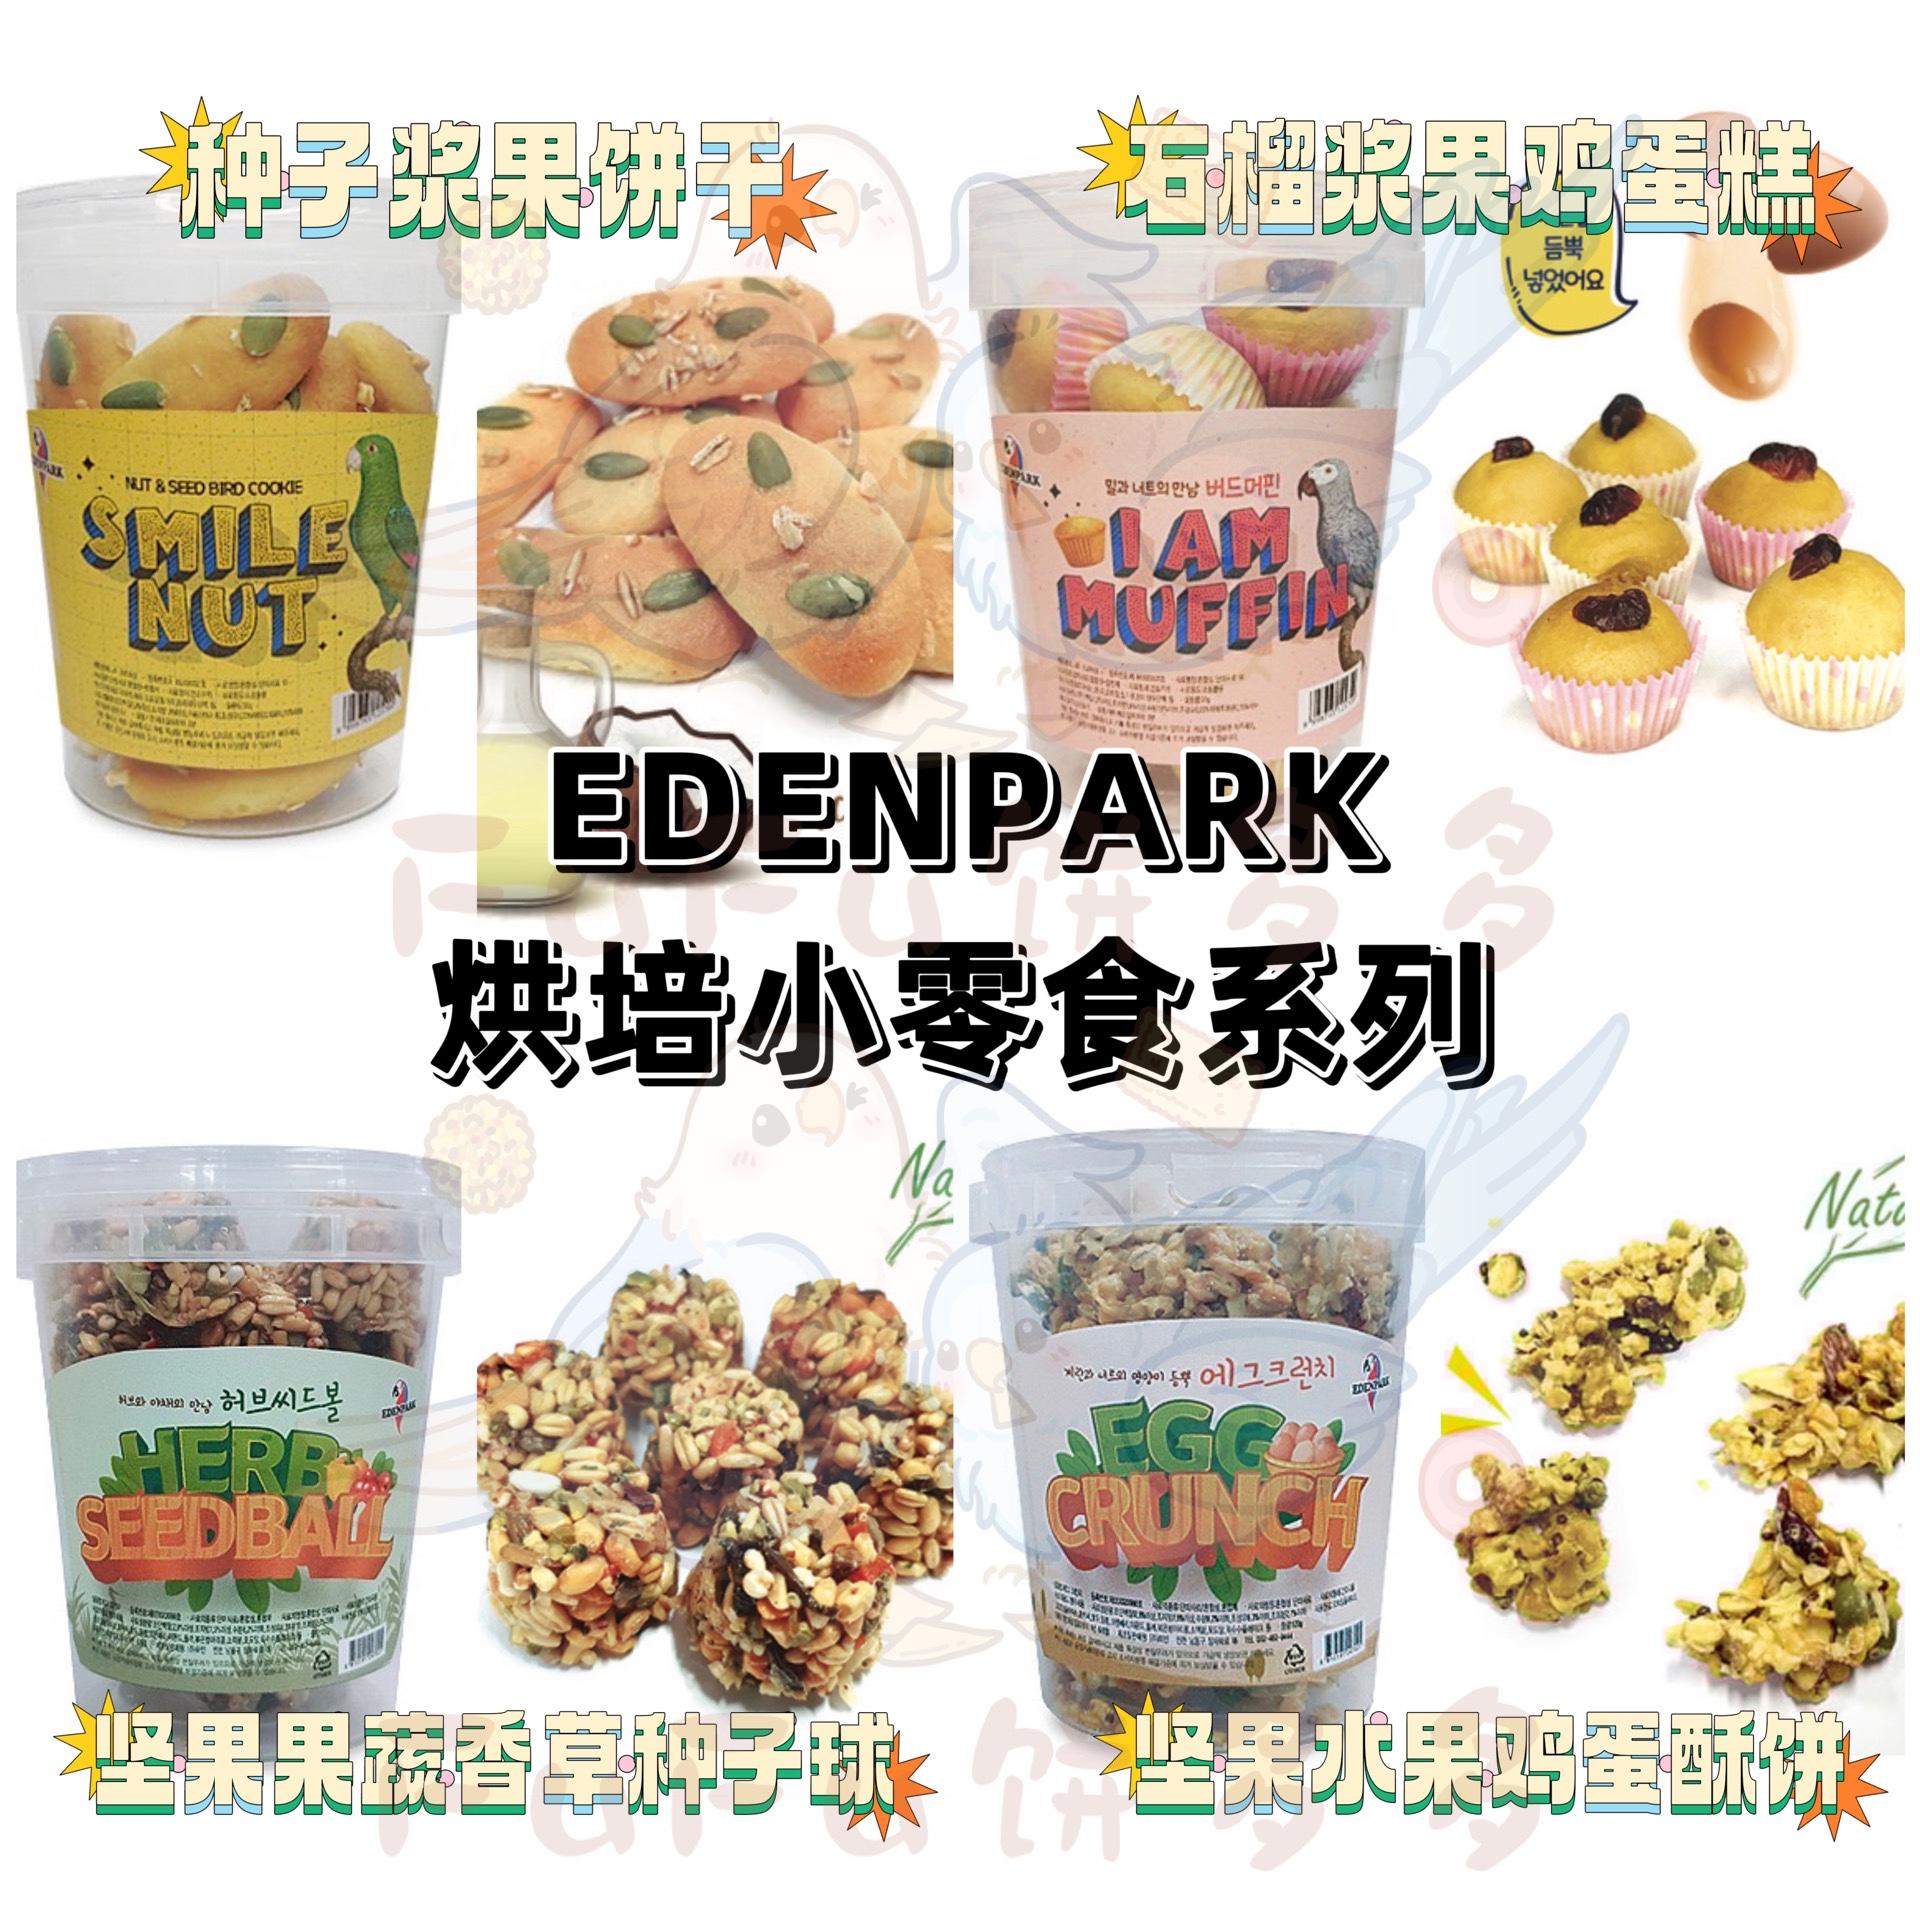 【鹦鹉零食】EDENPARK烘培种子浆果饼干/鸡蛋糕/鸡蛋酥饼/种子球